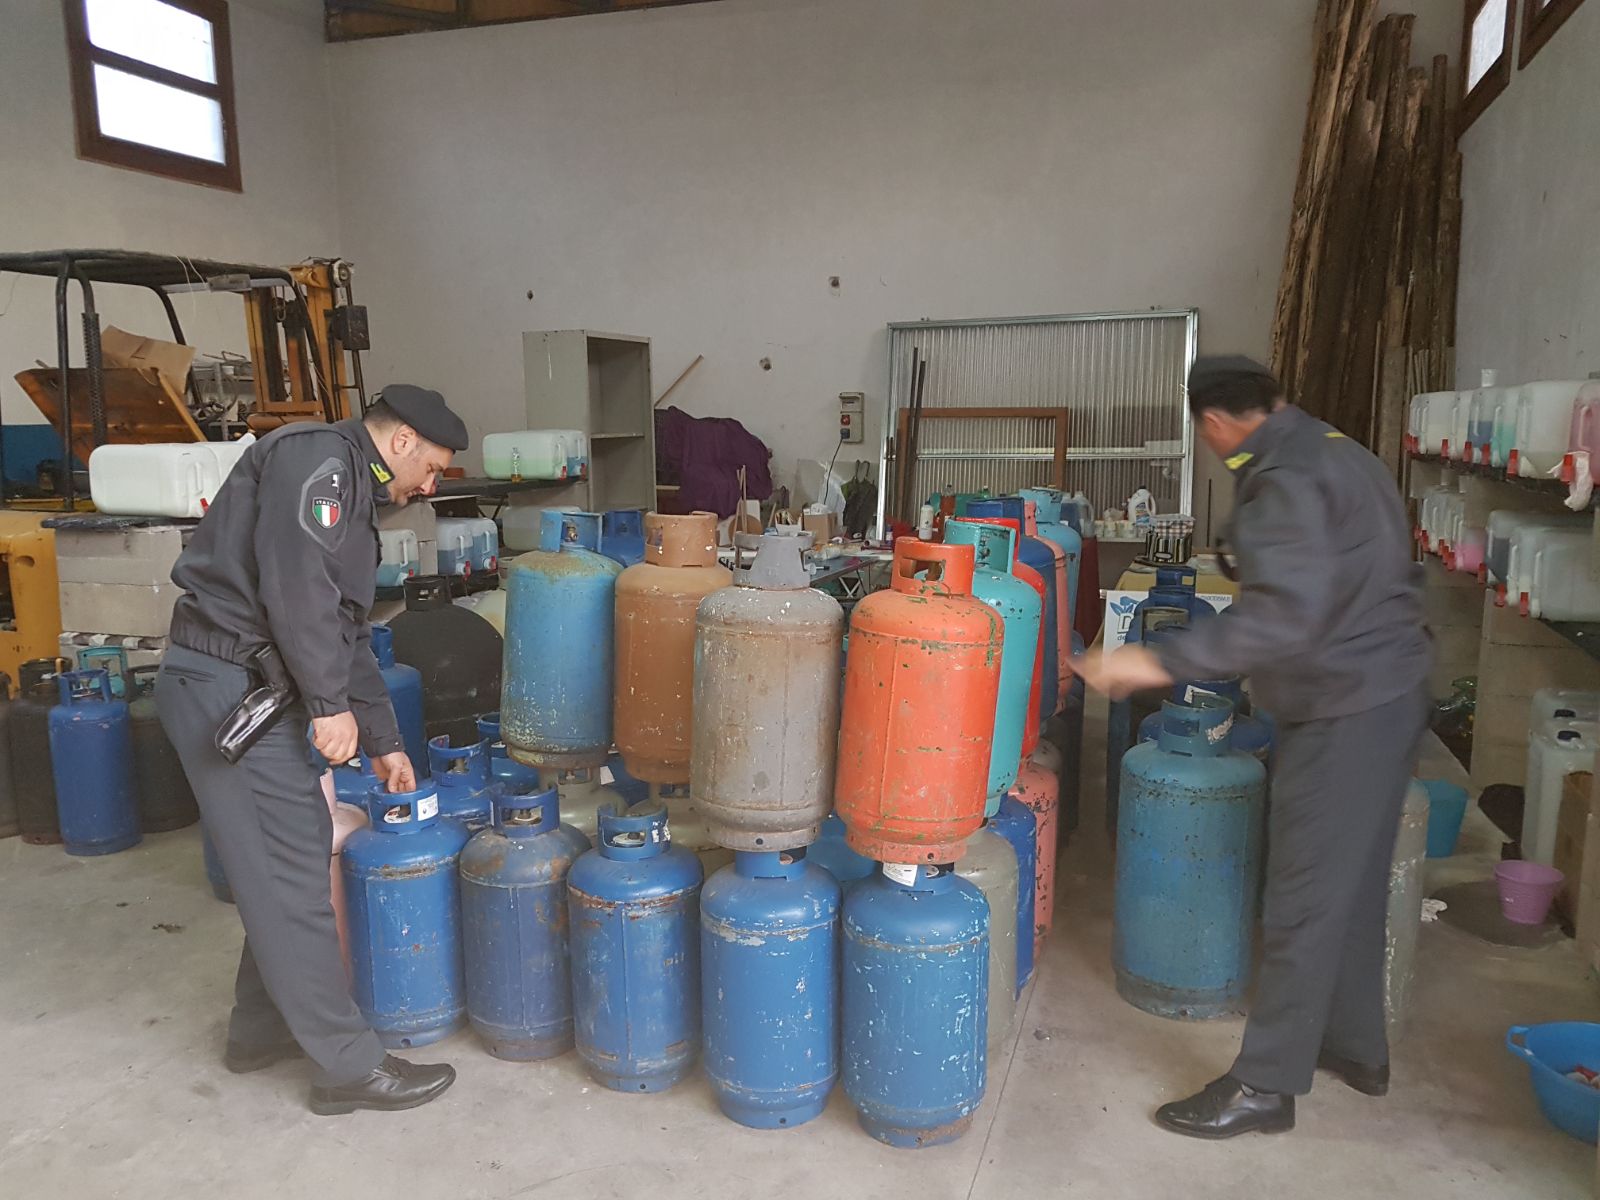  Sequestrate dalle Fiamme Gialle oltre 300 bombole di gas di contrabbando tra Piedimonte Matese e Riardo